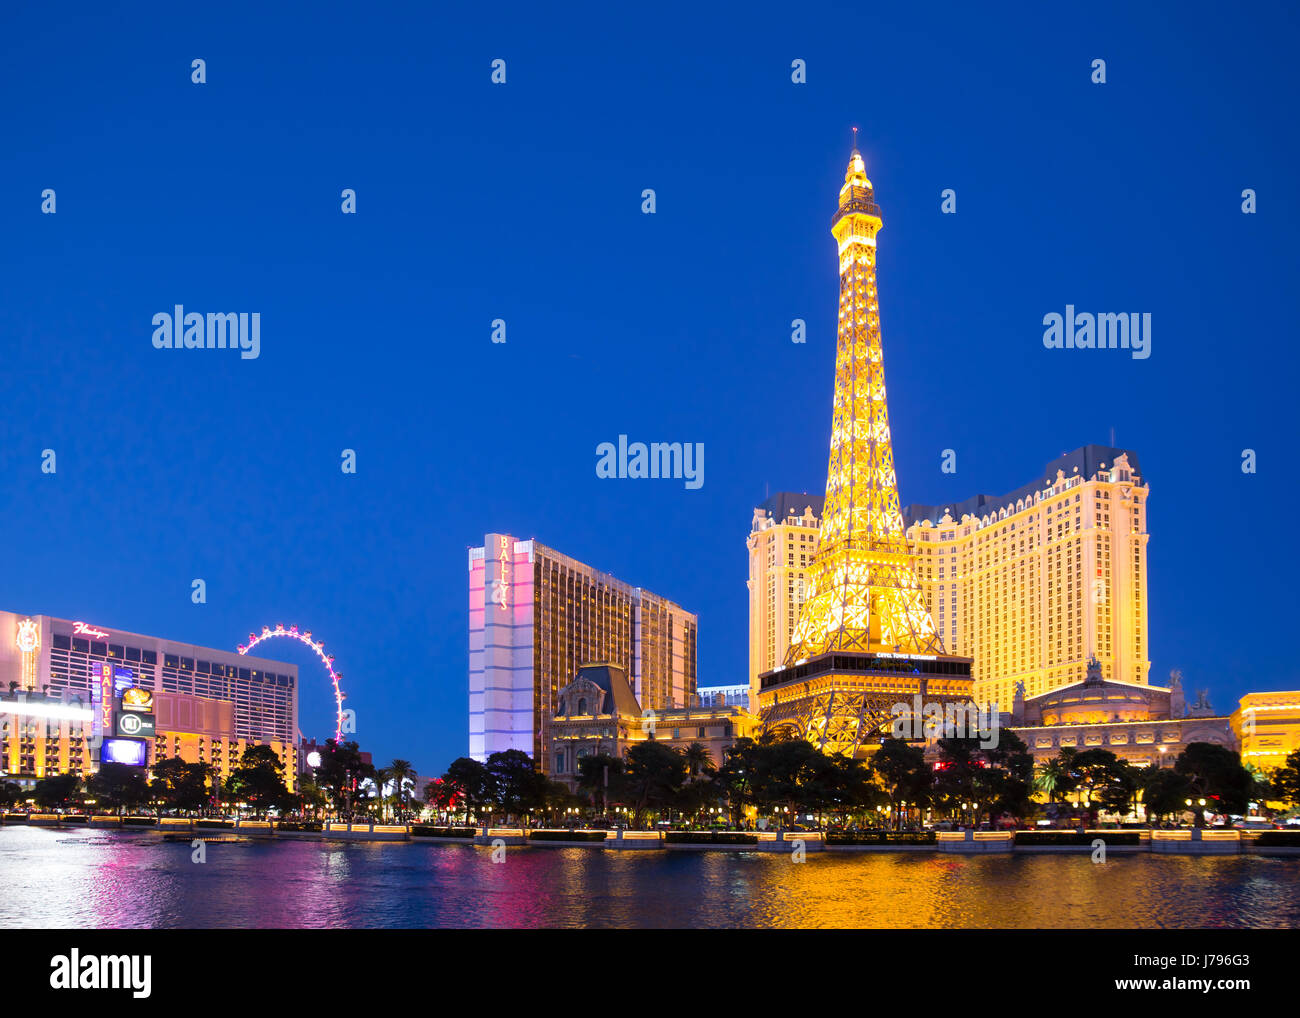 LAS VEGAS, NEVADA - Maggio 17, 2017: Las Vegas Boulevard illuminata di notte con hotels e resorts casinò in vista. Foto Stock